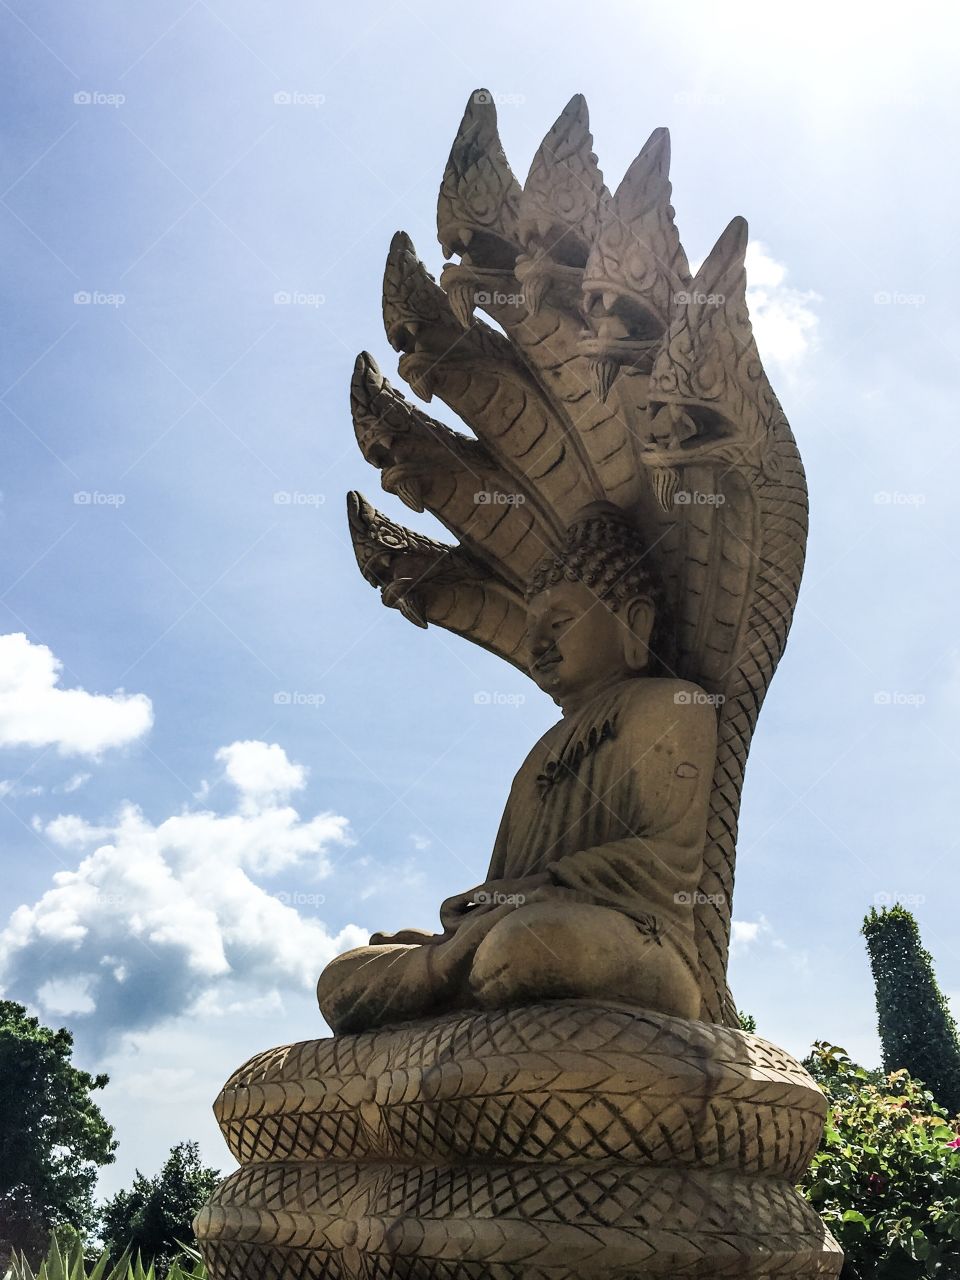 Statue of Buddha religion freedom temple lifestyle Phuket Thailand 